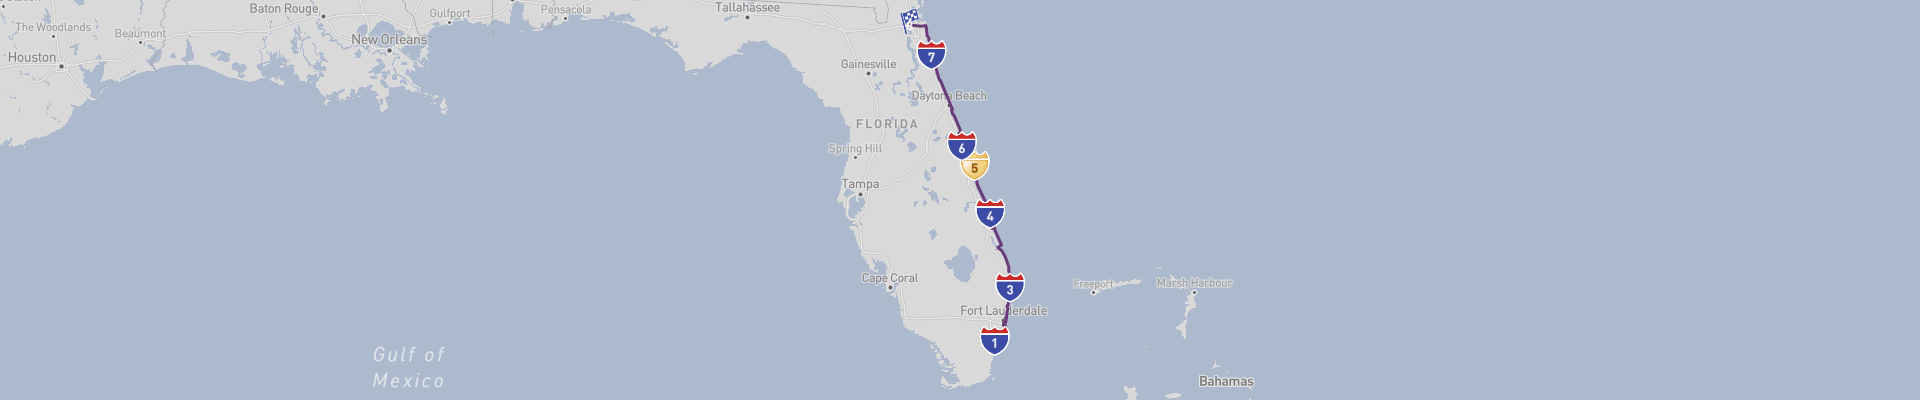 Florida's Atlantic Coast Road Trip